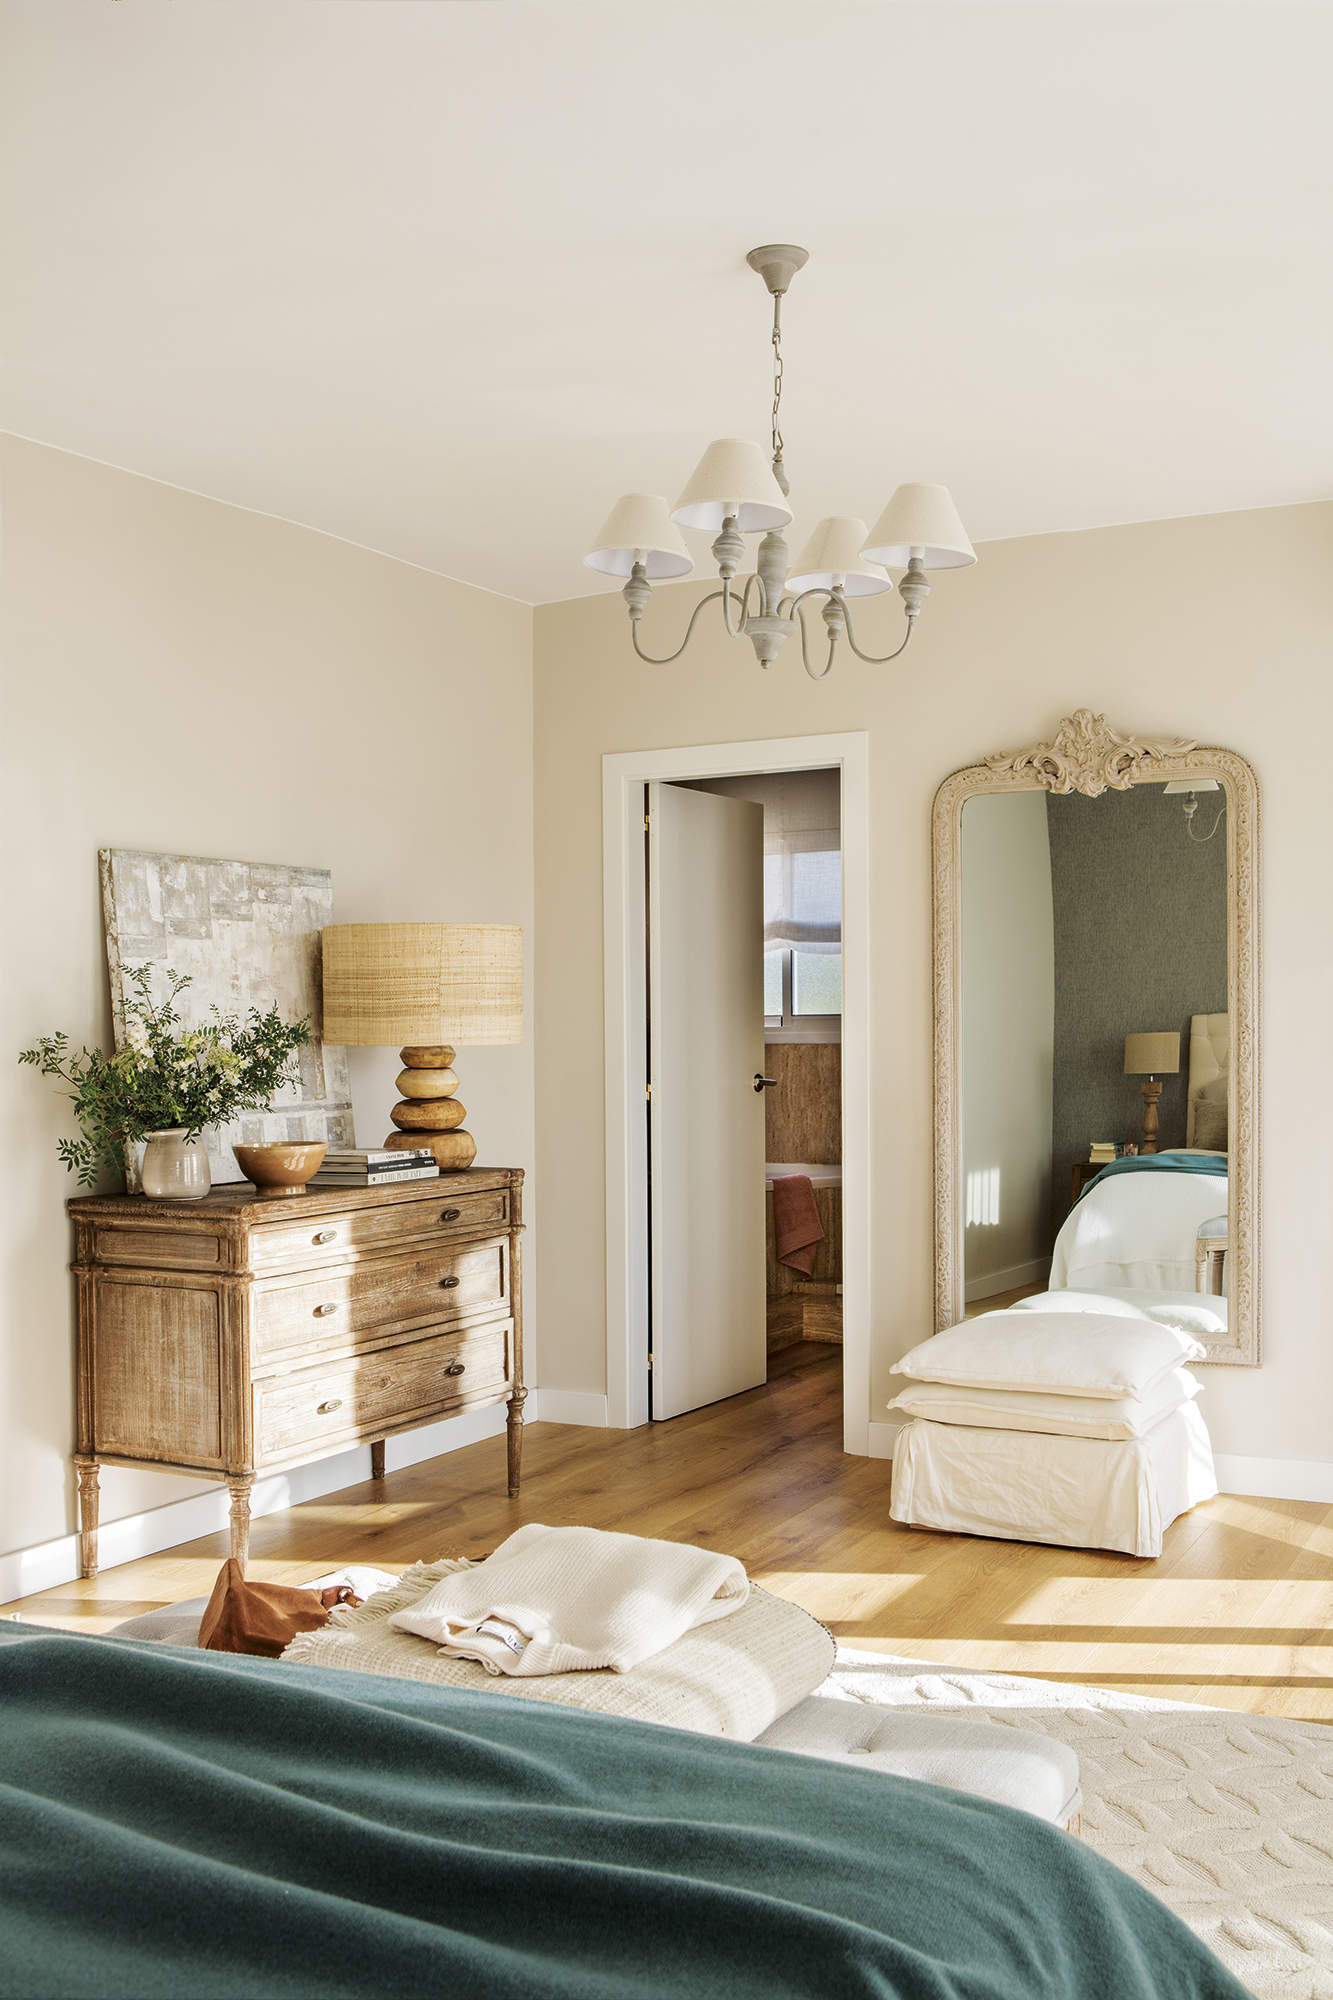 Dormitorio principal con baño, espejo grande, cómoda de madera envejecida, lámpara de mesa de madera, lámpara de techo clásica, cuadro, suelo de madera y puf tapizado.